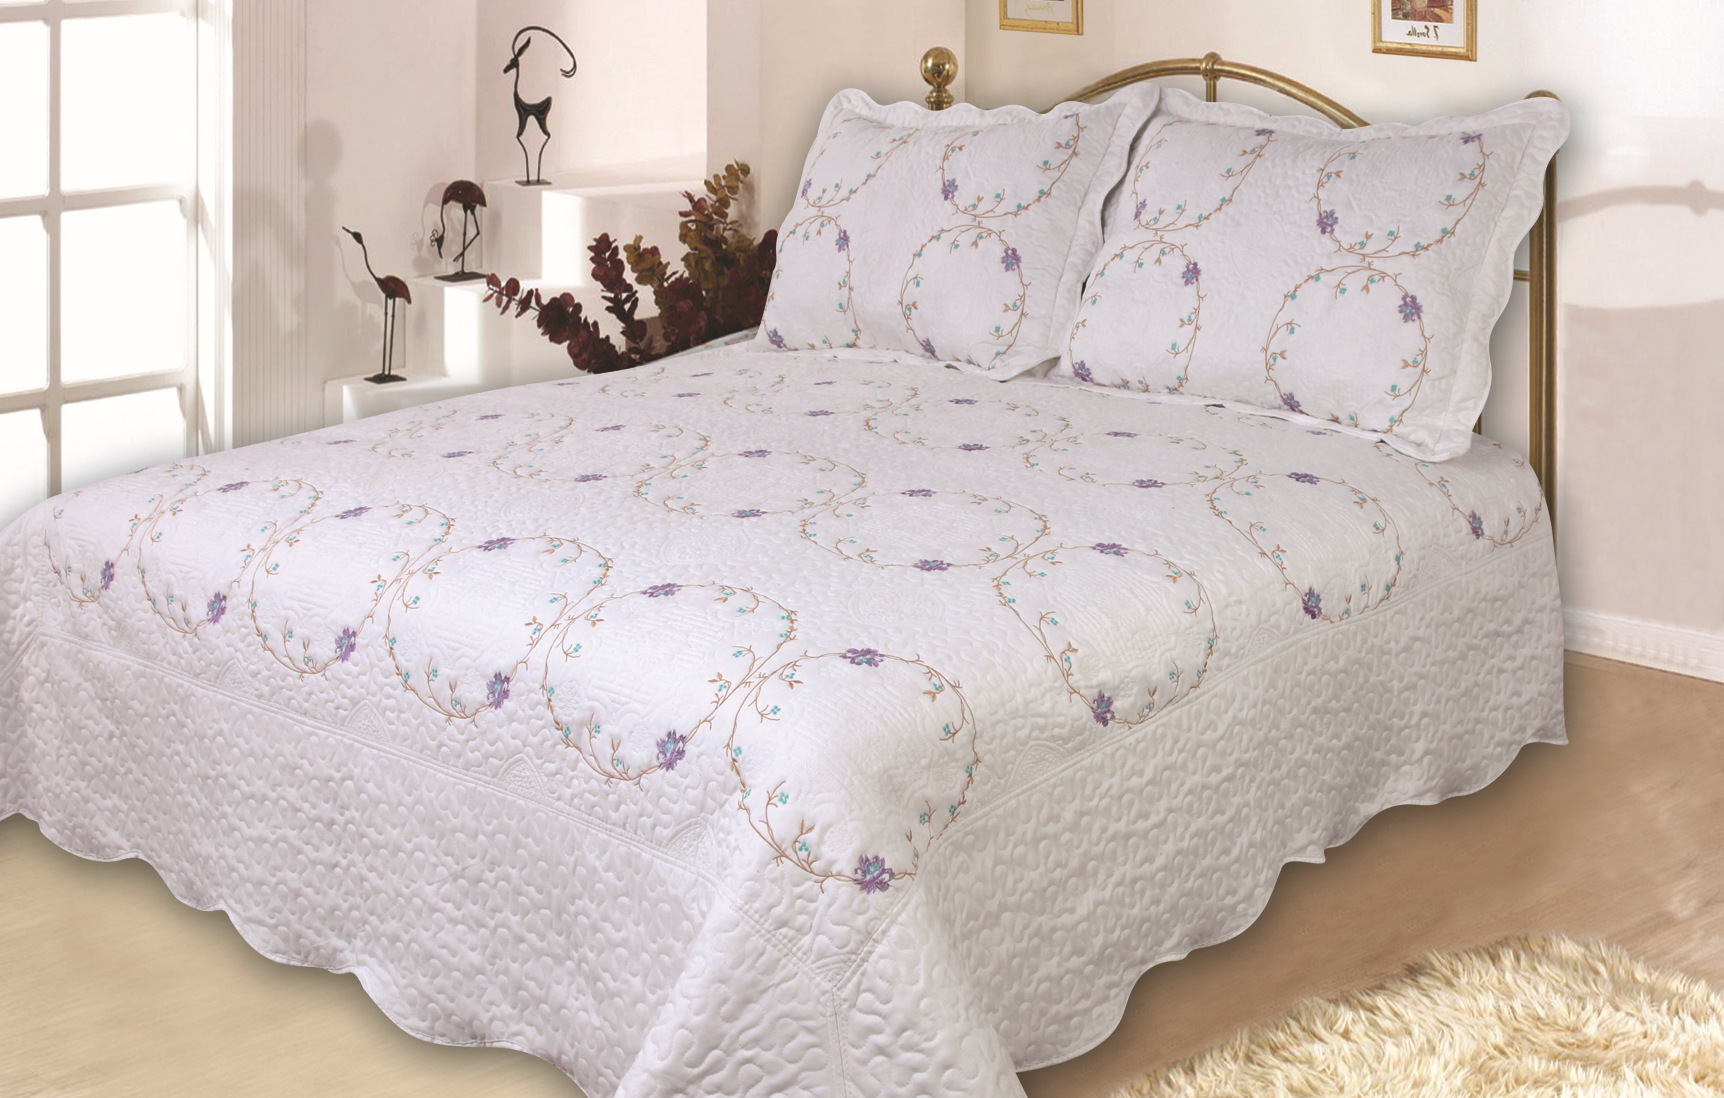 新款夏凉空调水洗被 多色绗缝绣花工艺被 高档床盖床单床垫